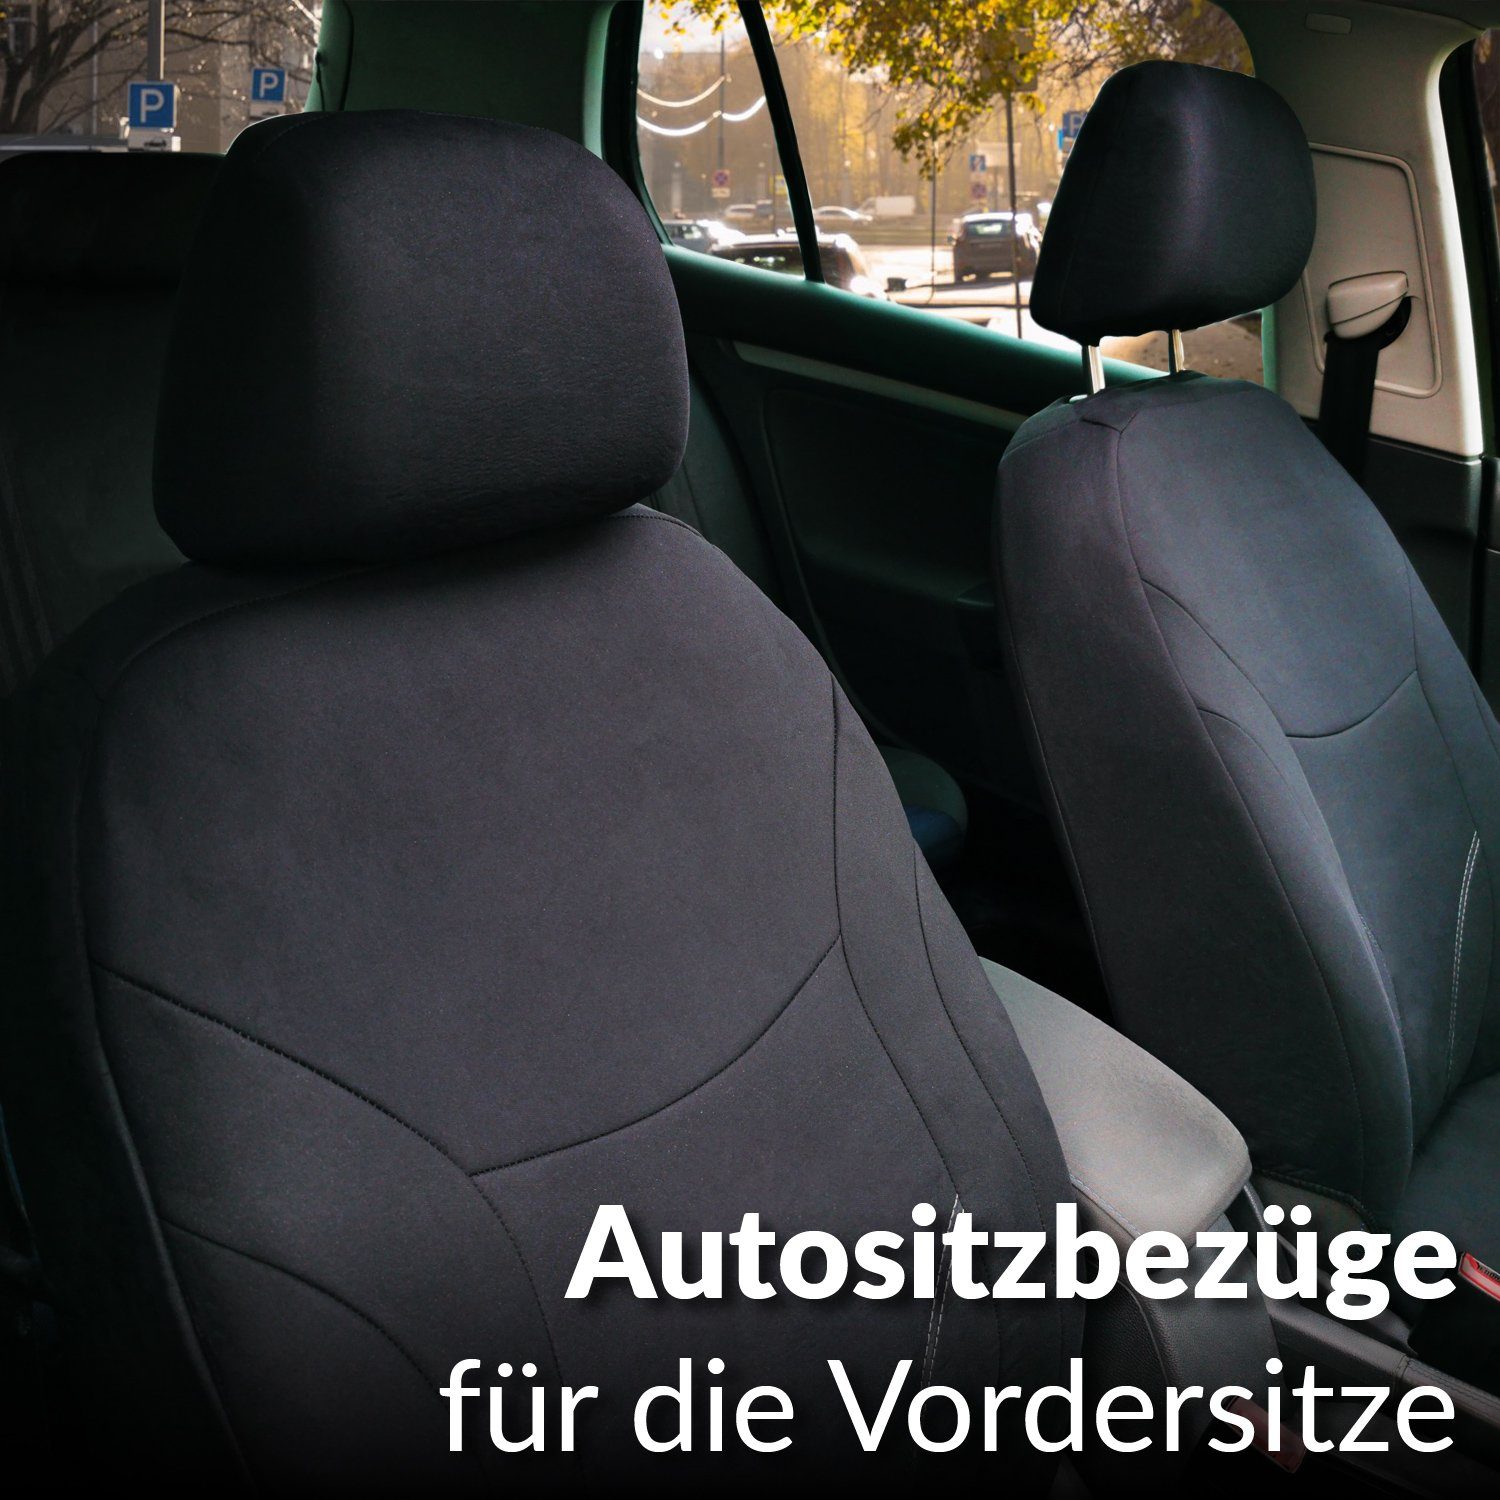 Upgrade4cars Auto-Sitzbezüge Vordersitze Schwarz Rot, Auto-Schonbezüge Set  Vorne für Fahrersitz & Beifahrer